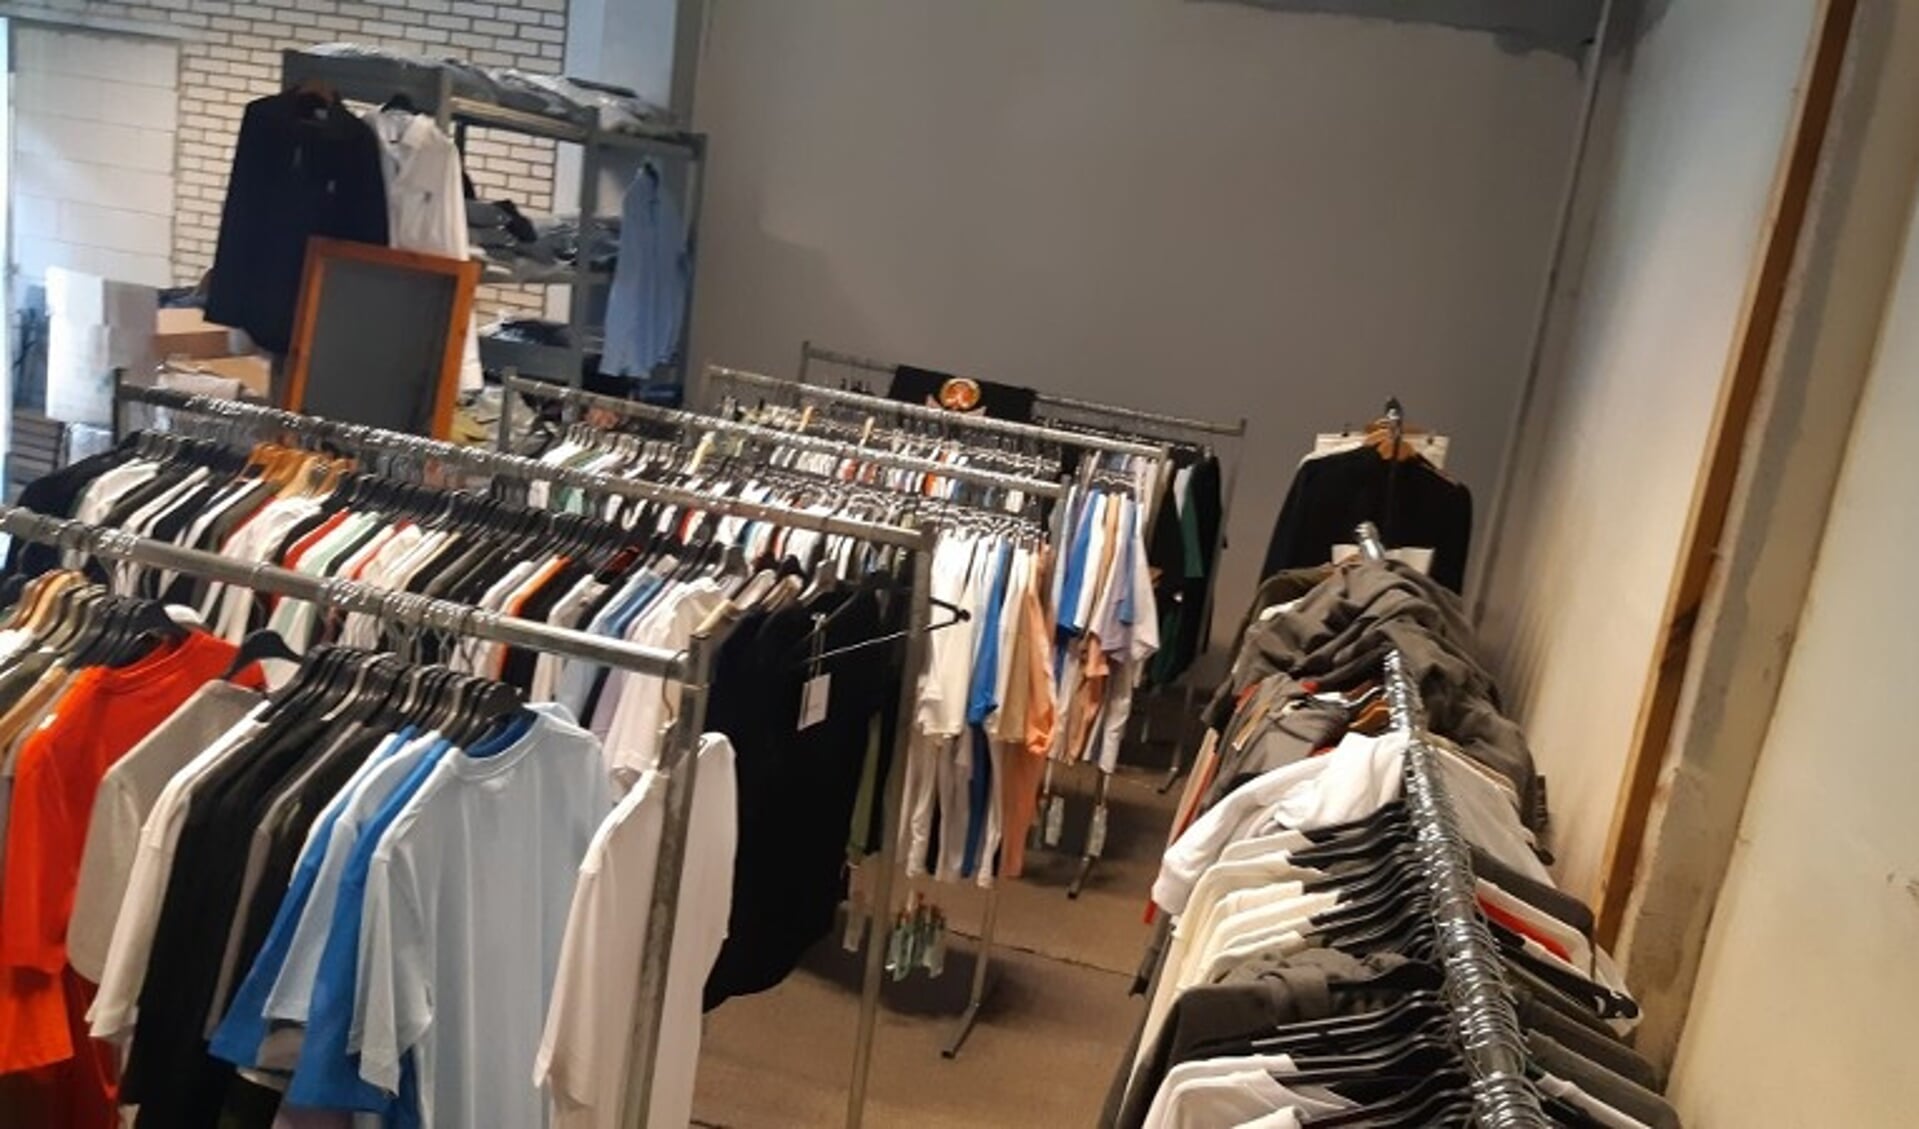 Winkel' vol met nep merkkleding ontdekt in garagebox Hilversum - Het nieuws uit